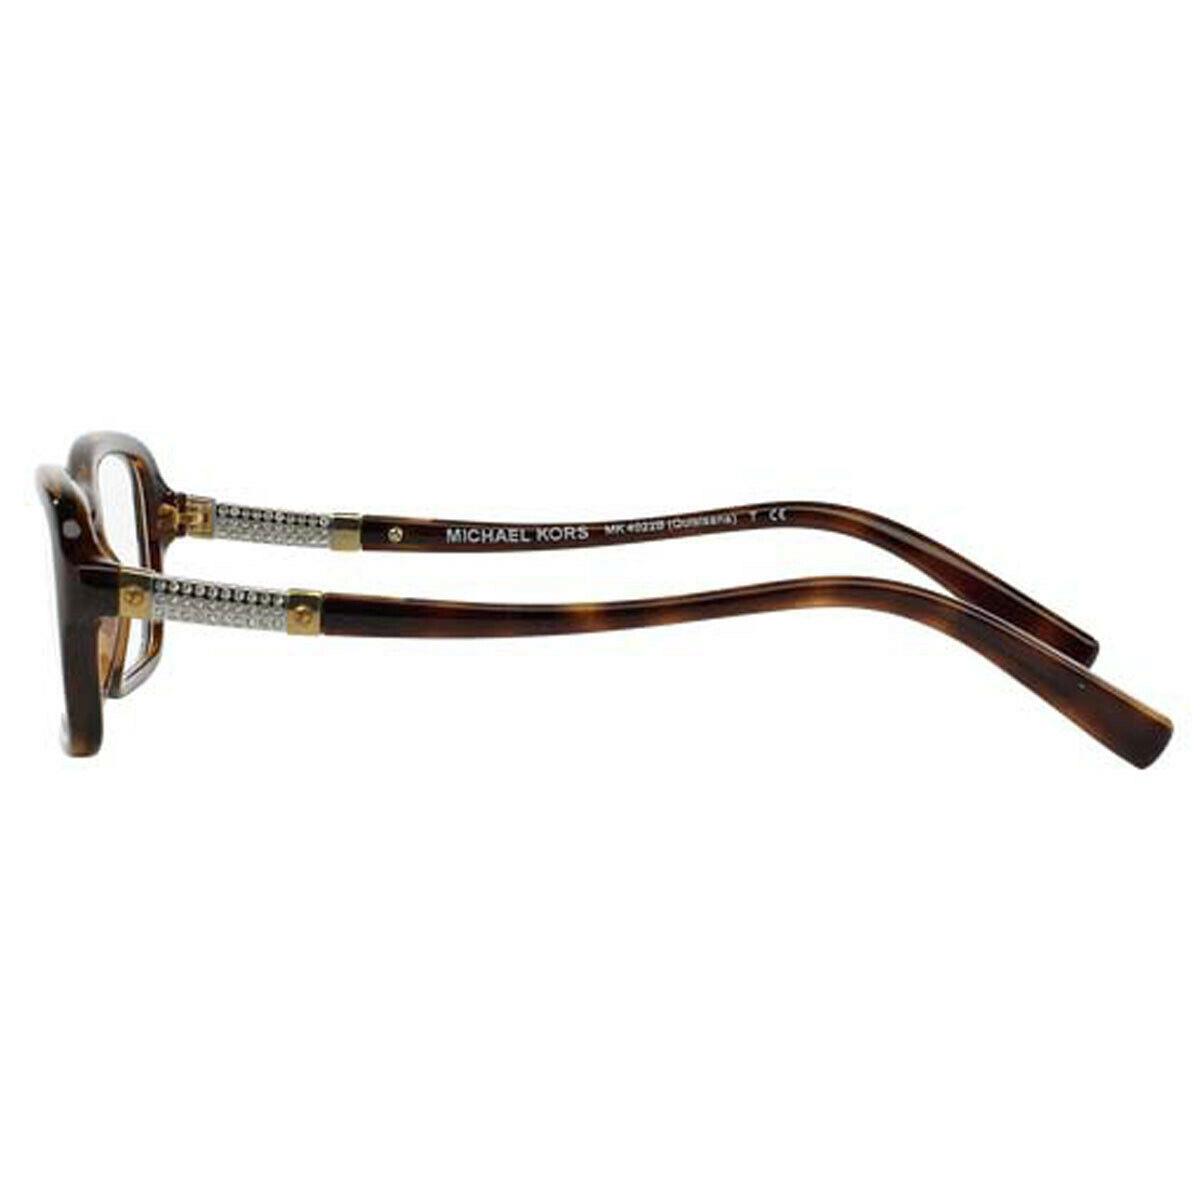 Michael Kors MK4022B Quisisana 3046 Dark Tortoise Eyeglasses 55mm 16 140